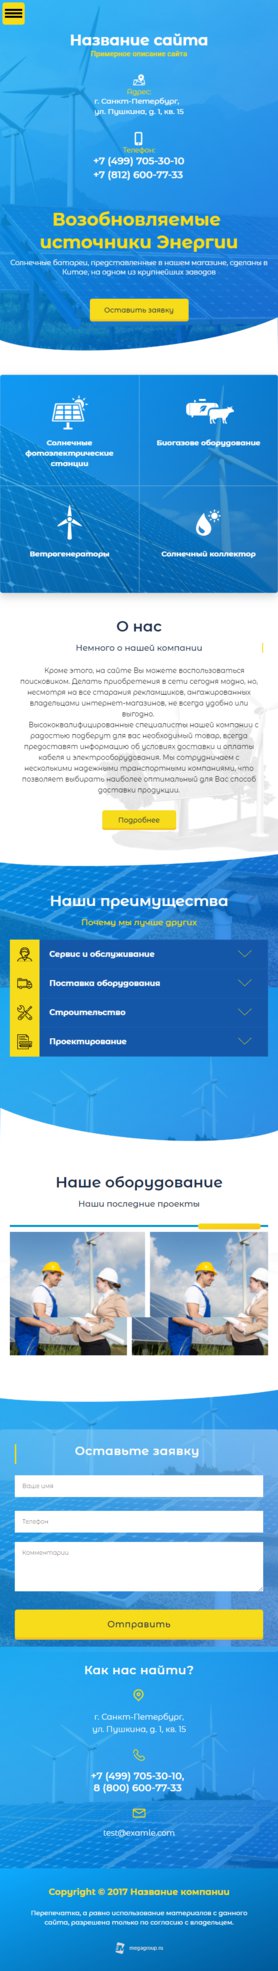 Готовый Сайт-Бизнес № 2021138 - Источники Энергии (Мобильная версия)